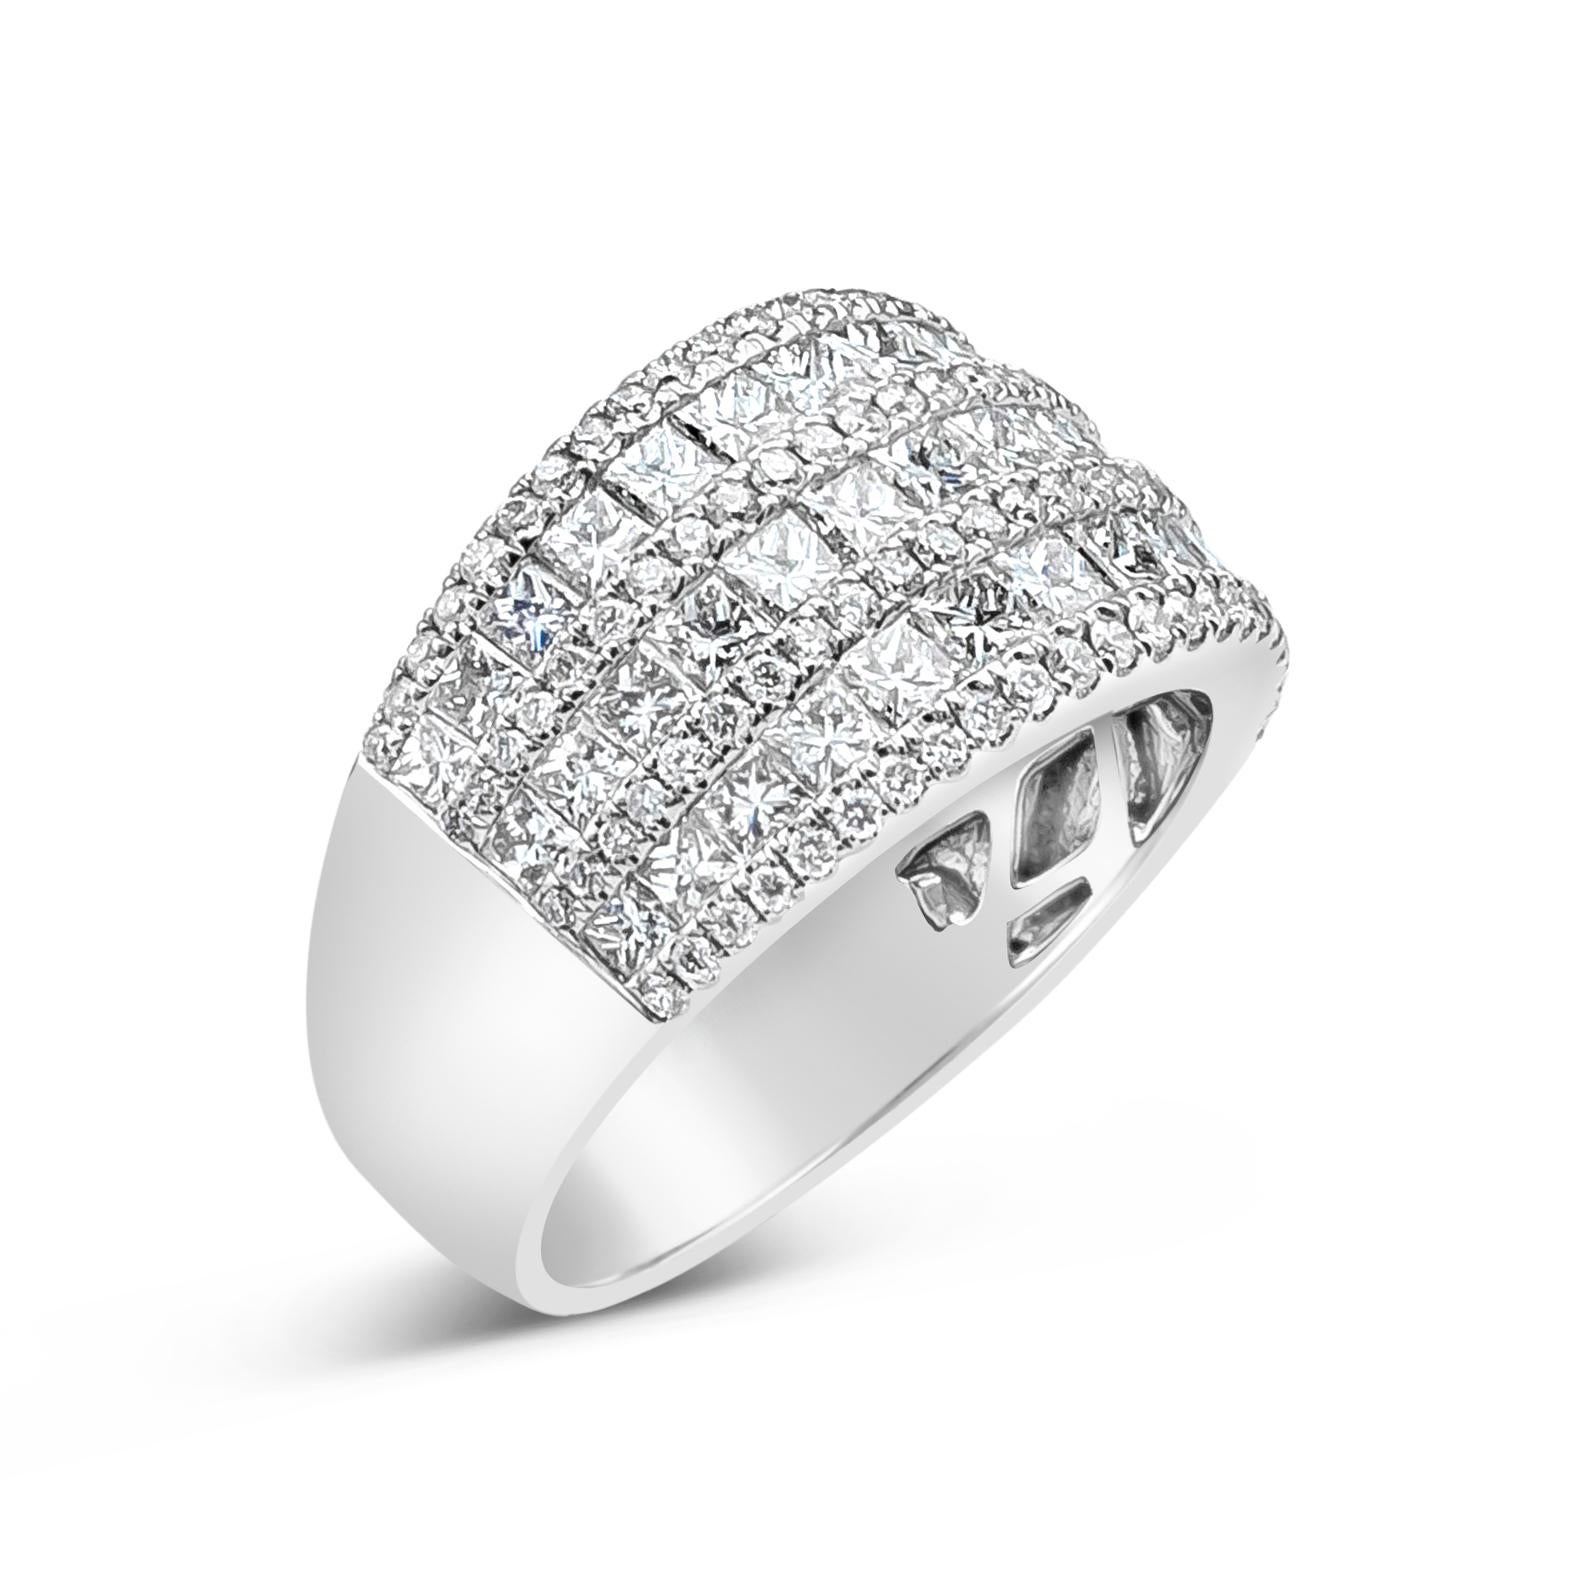 Roman Malakov 2.27 Carat Total Princess Cut Diamonds Triple Rows Fashion Ring For Sale 2